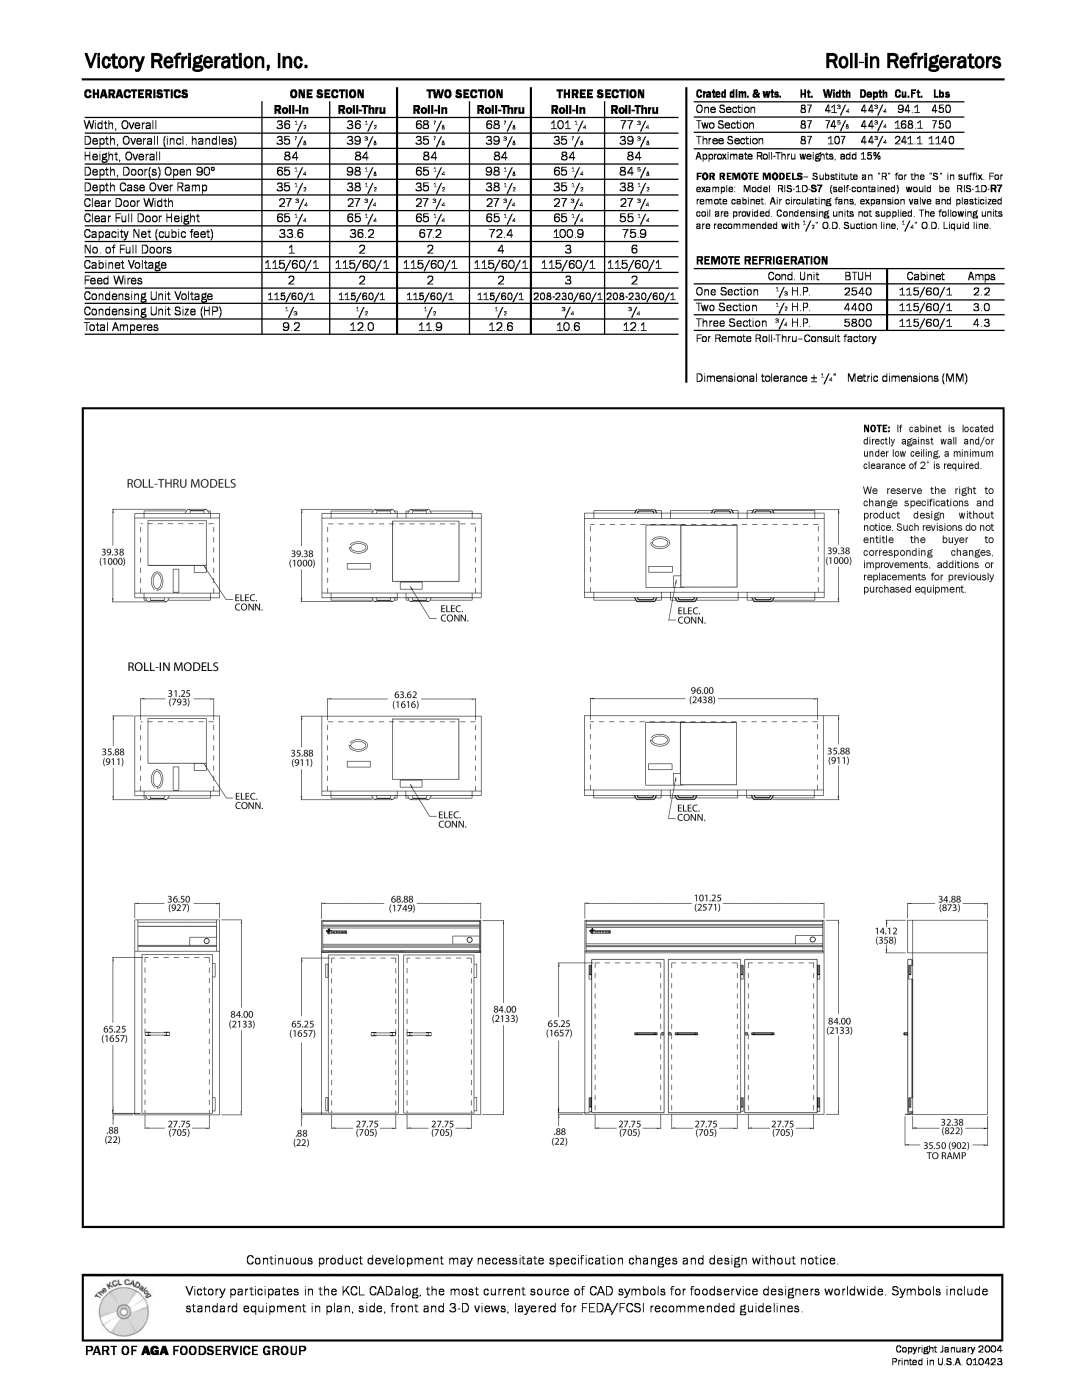 Victory Refrigeration RIS-2D-S7, RISA-3D-S7, RIA-2D-S7, RIS-1D-S7, RIA-3D-S7 Victory Refrigeration, Inc, Roll-inRefrigerators 